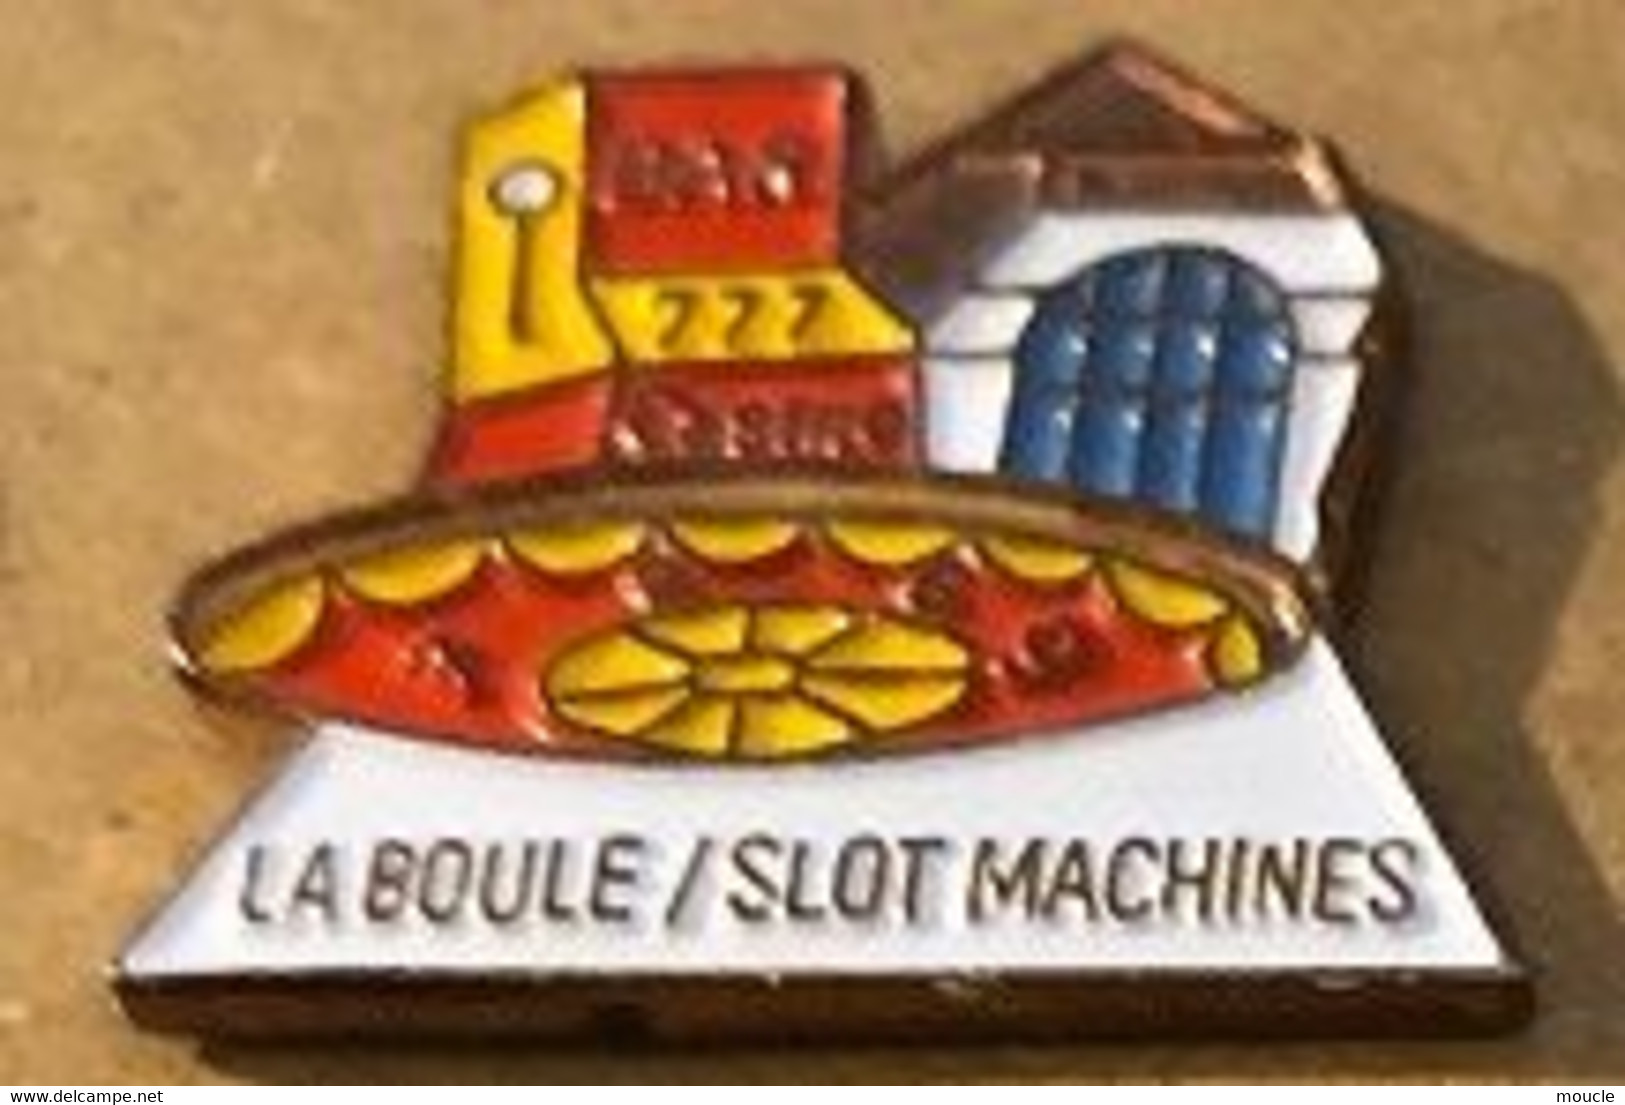 LA BOULE / SLOT MACHINES - BANDIT MANCHOT - CASINO - ROULETTE  - BAR - MACHINE A SOUS - MONEY - ARGENT - GELD -    (16) - Jeux